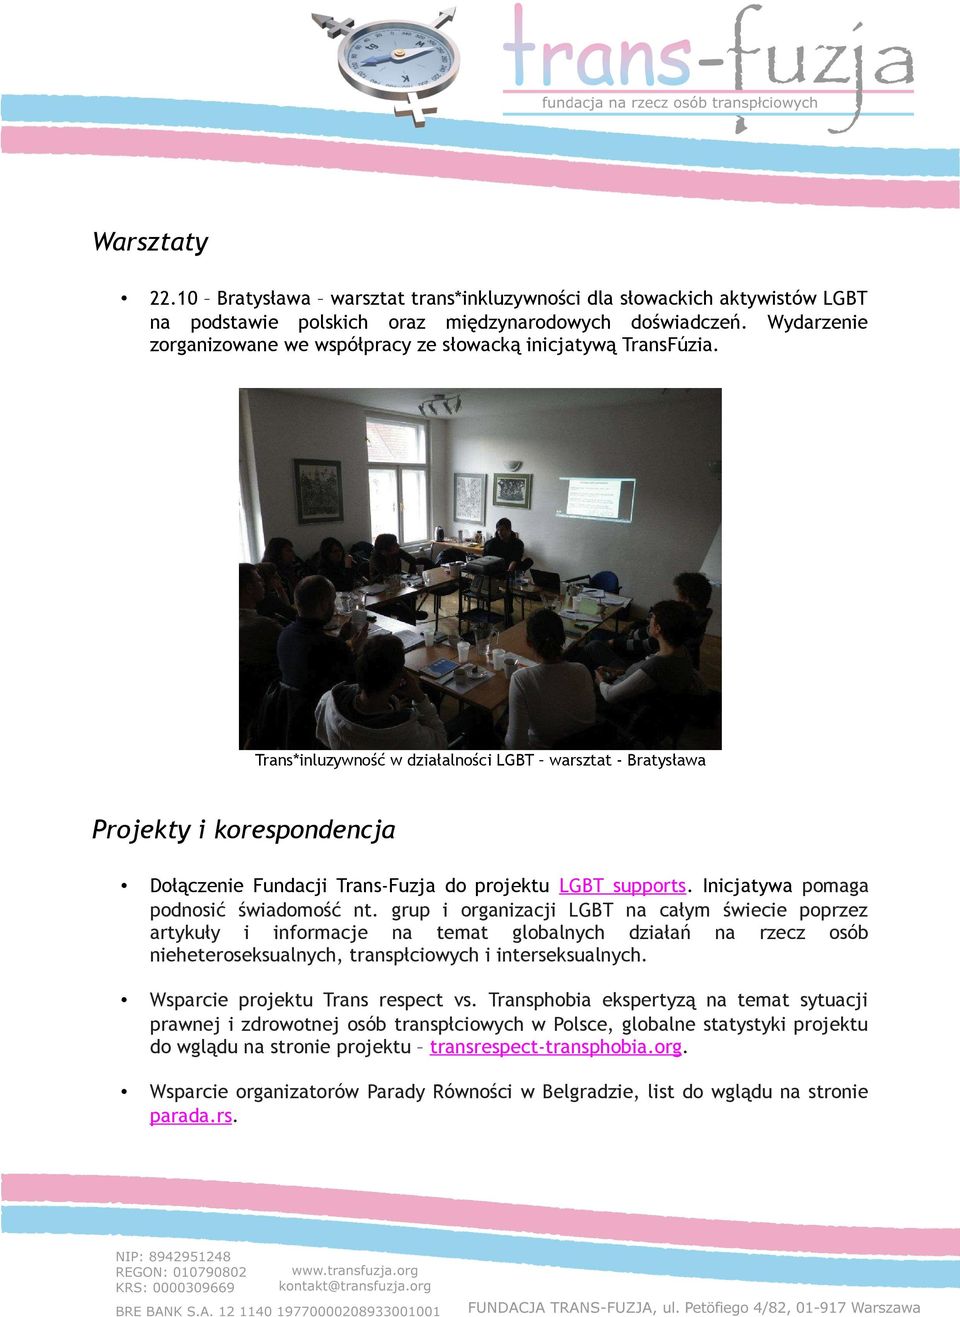 Trans*inluzywność w działalności LGBT warsztat - Bratysława Projekty i korespondencja Dołączenie Fundacji Trans-Fuzja do projektu LGBT supports. Inicjatywa pomaga podnosić świadomość nt.